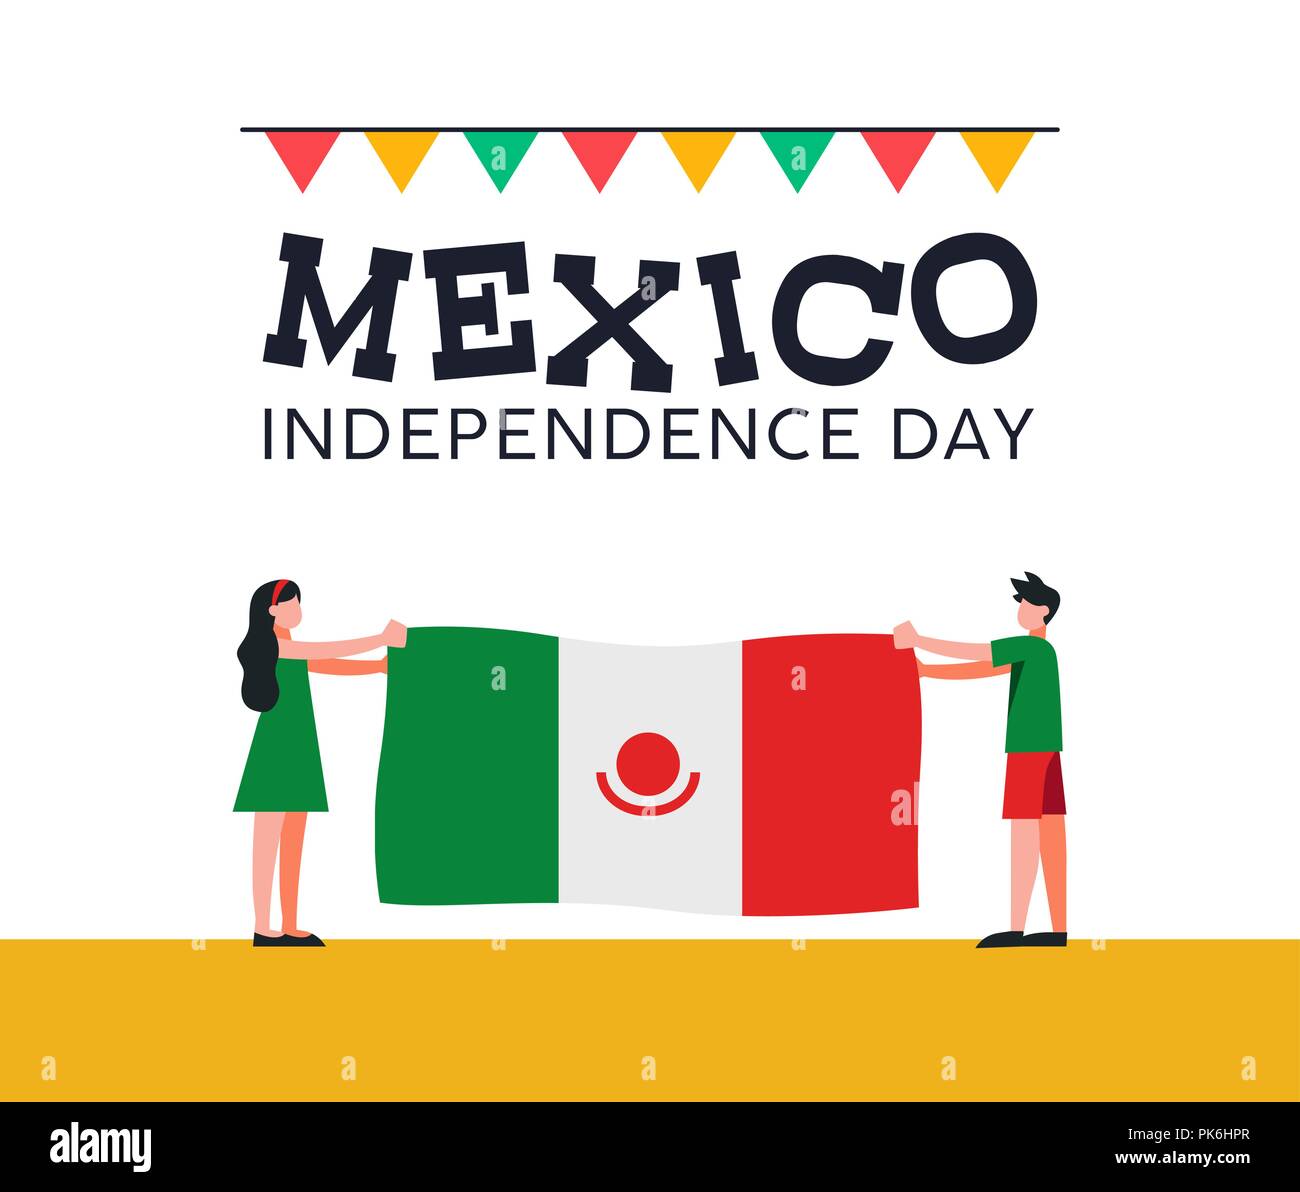 Heureux le jour de l'indépendance du Mexique l'illustration. La conception traditionnelle célébration nationale avec boy and girl holding drapeau pays mexicain pour septembre holid Illustration de Vecteur